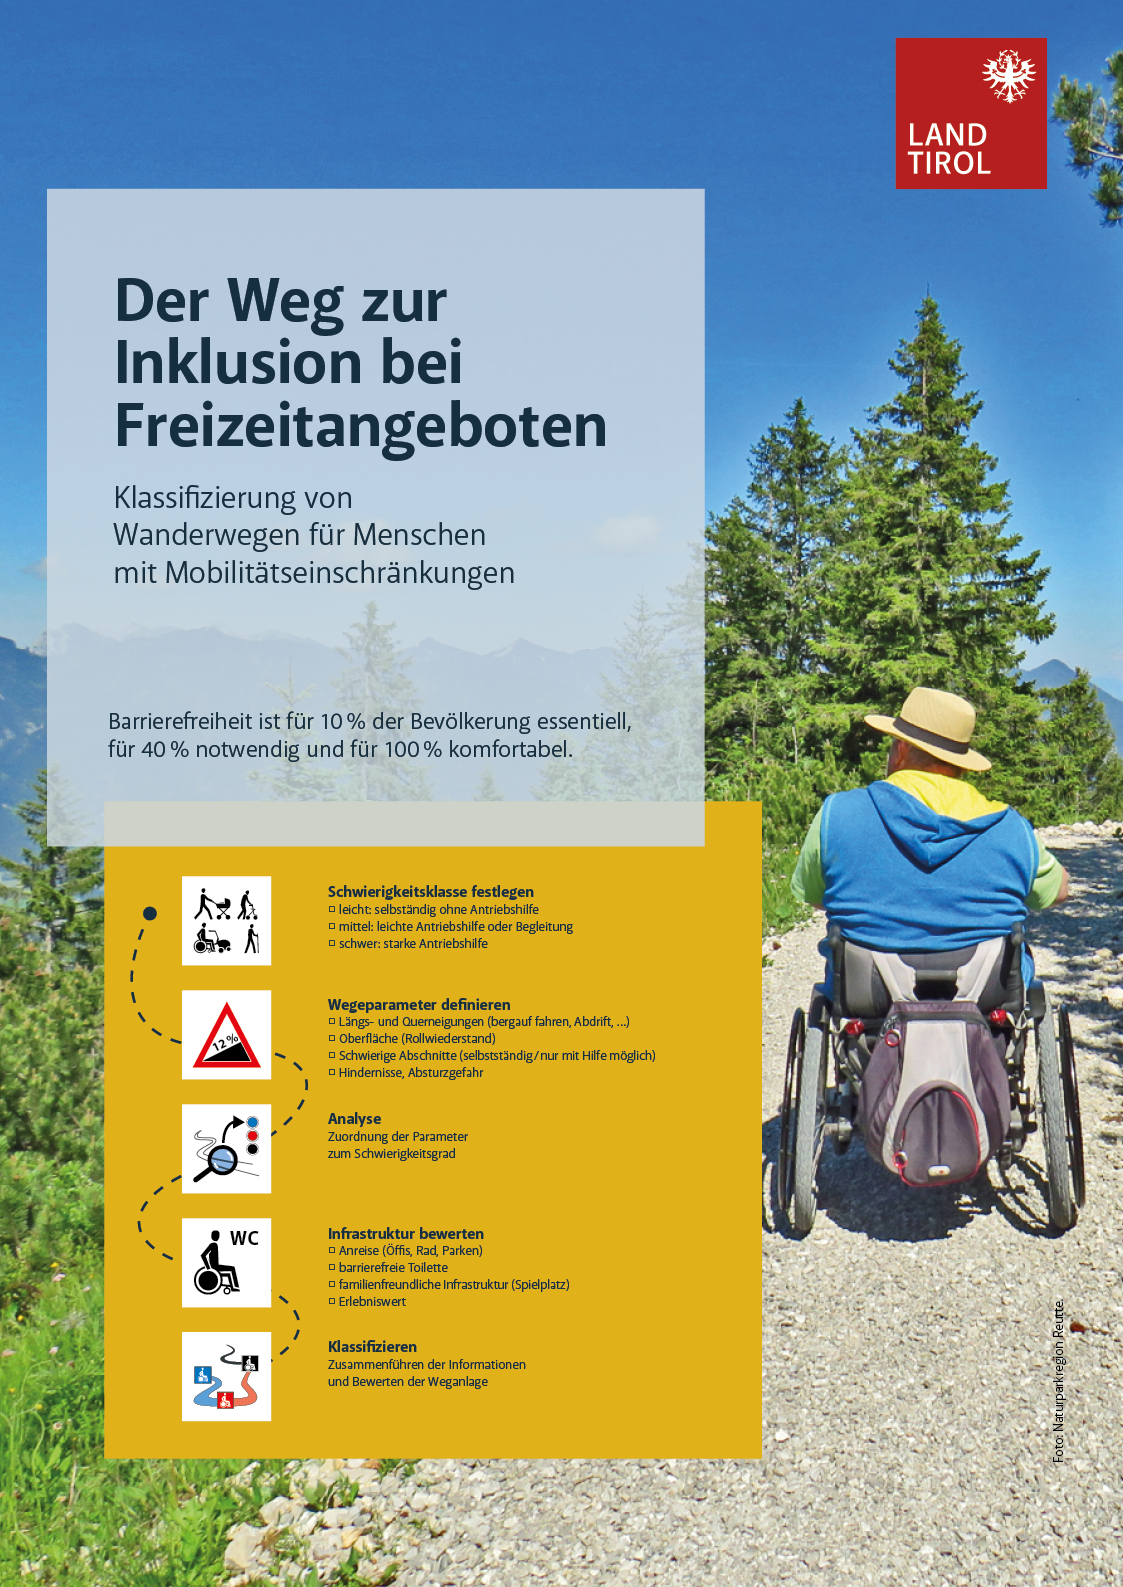 Klassifizierung von Wanderwegen für Menschen mit Mobilitätseinschränkungen.jpg